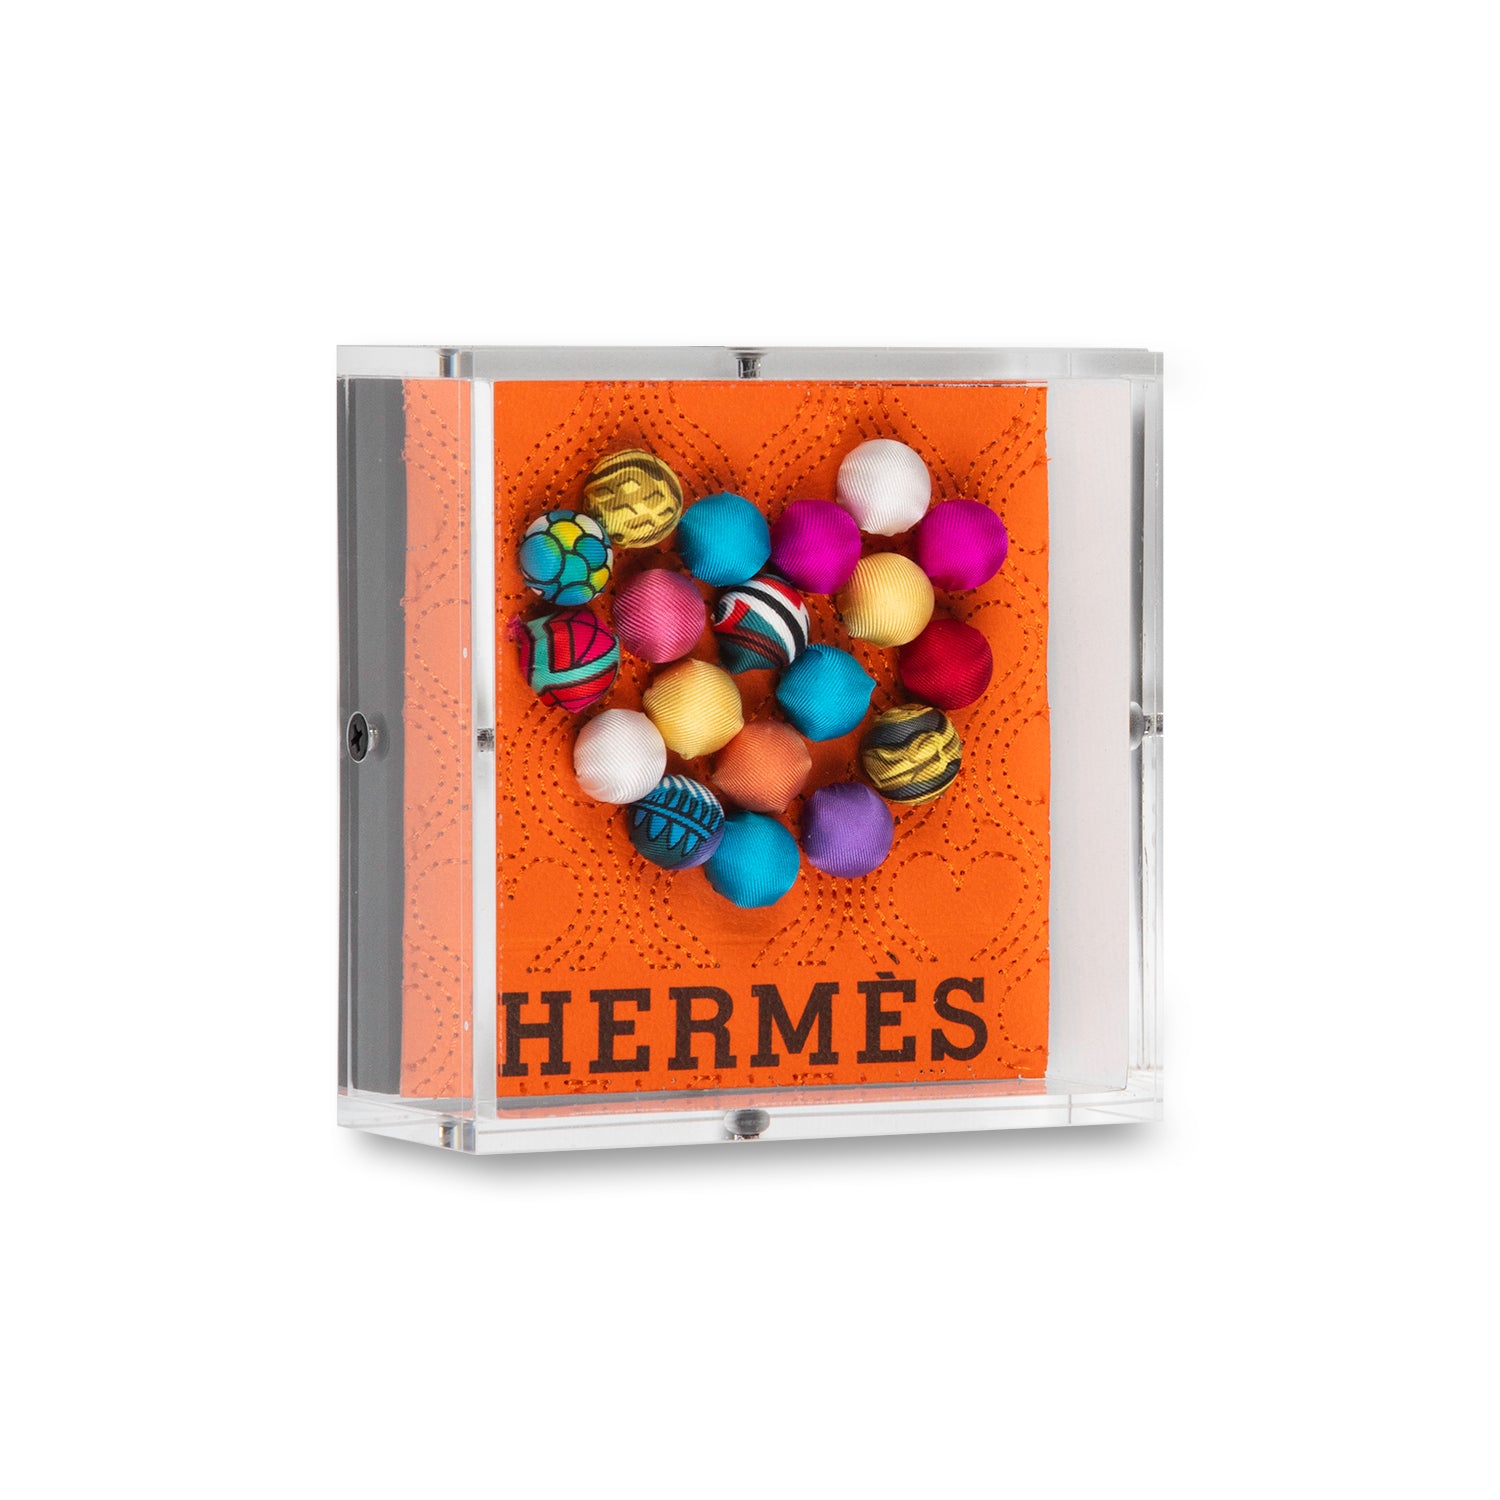 Petite Hermes Pom-Pom Heart by Stephen Wilson (5x5x2